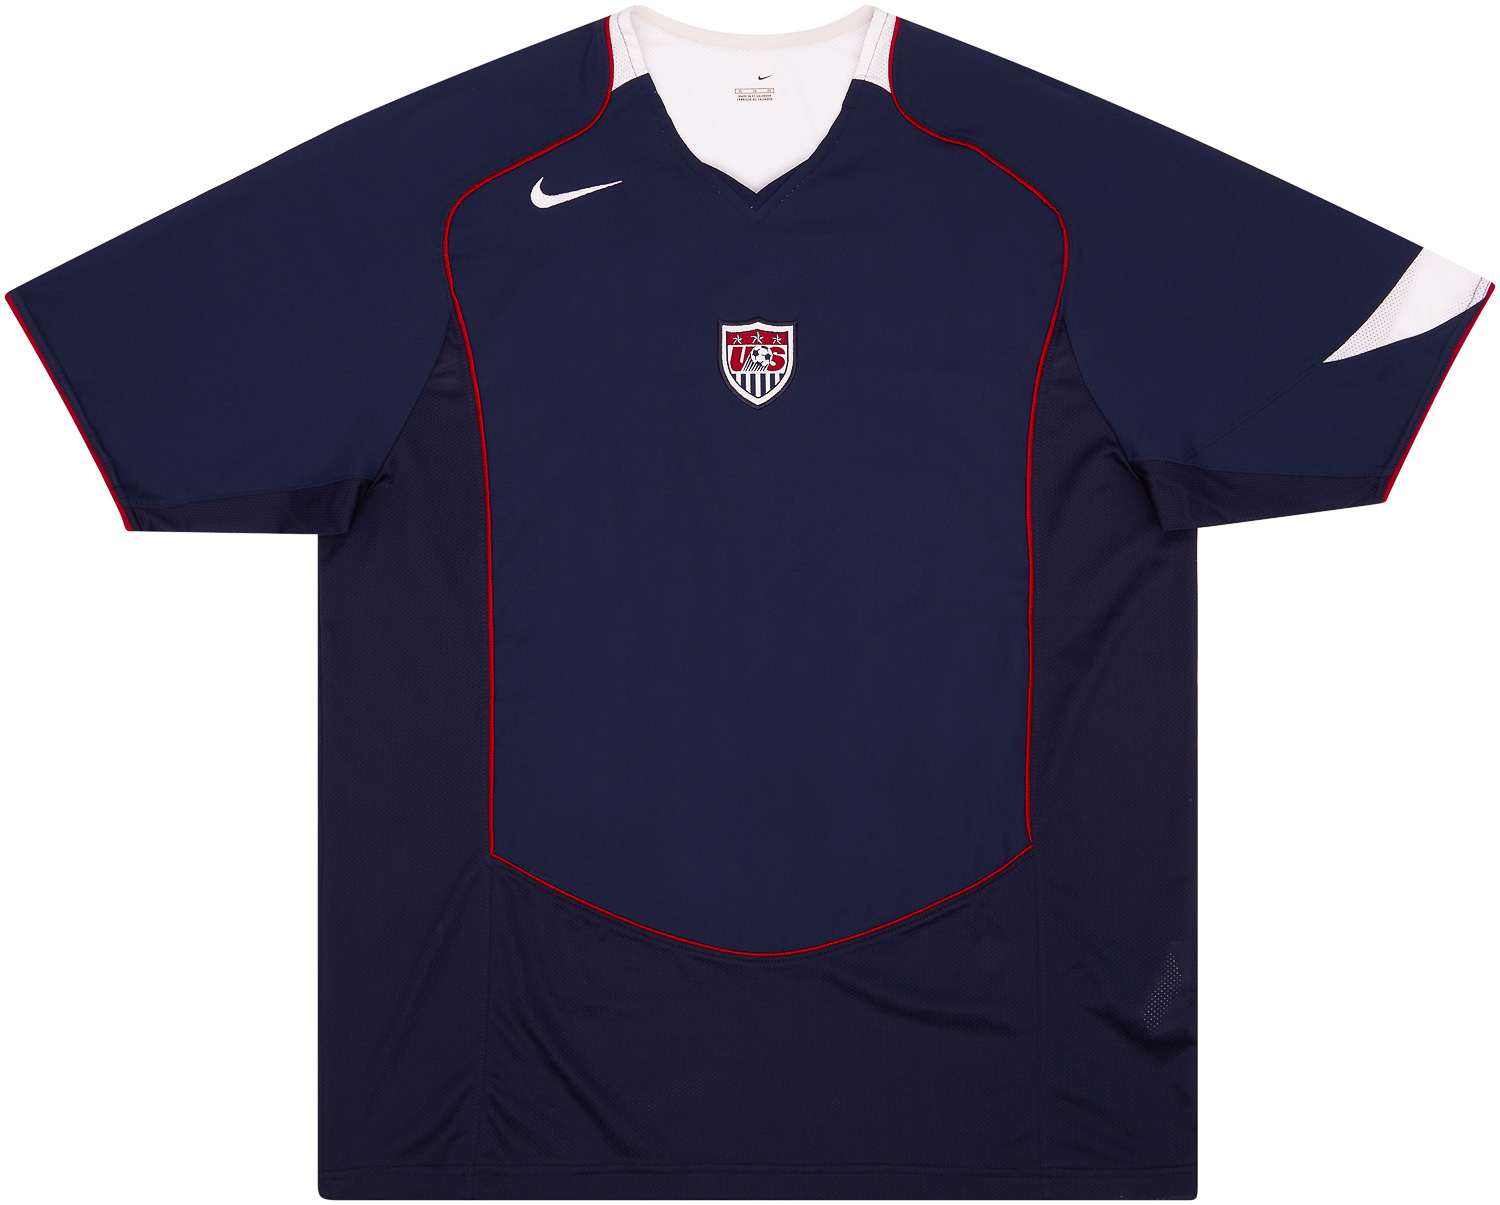 Retro USA Shirt